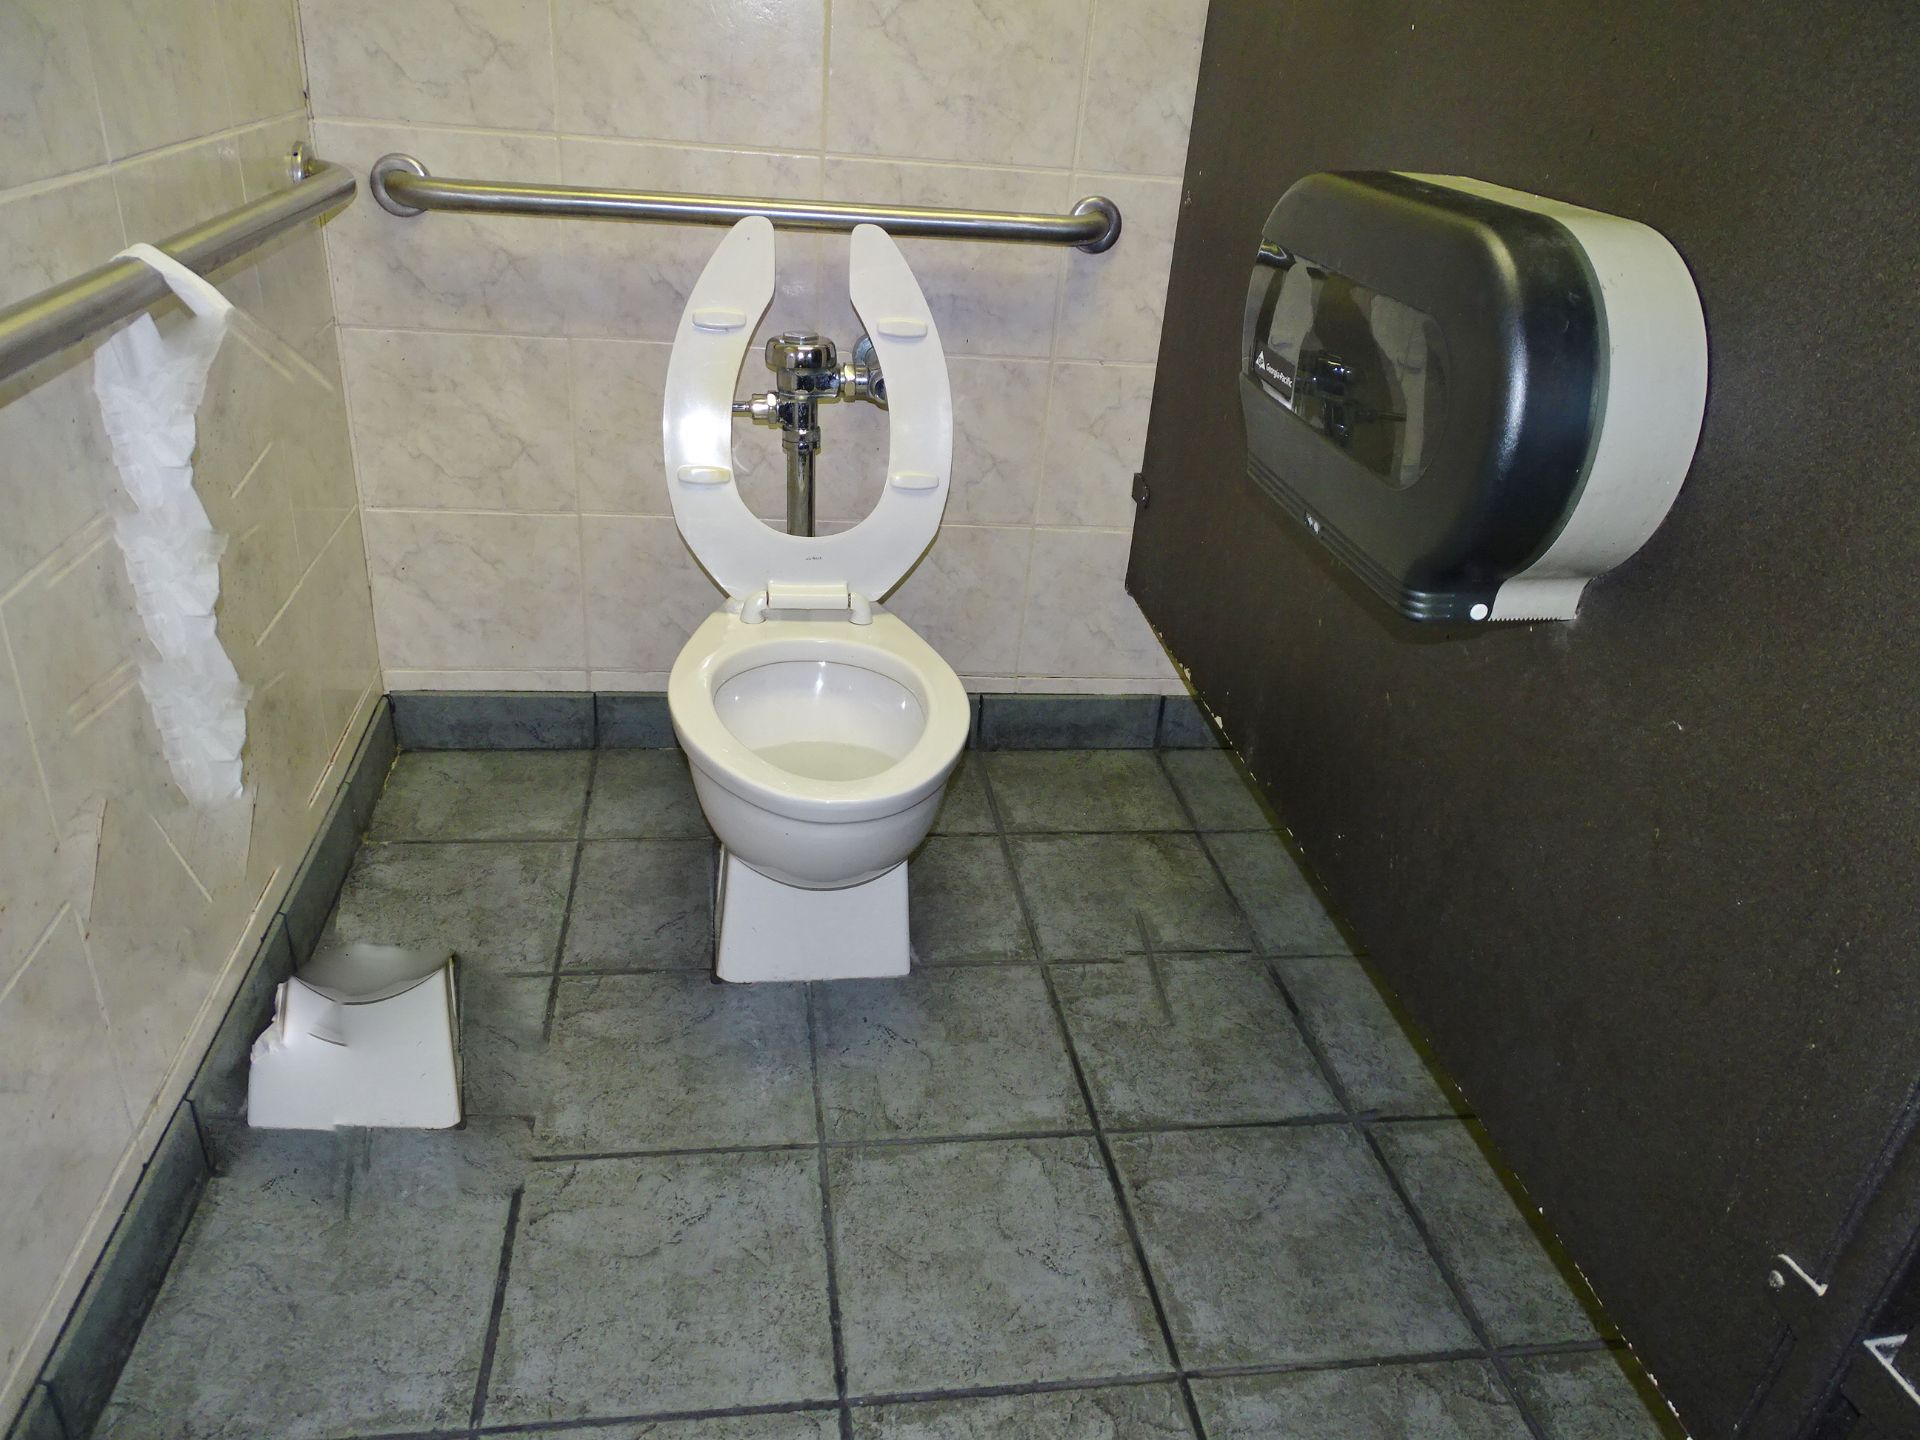 Restroom Fixtures (Men's Room) - Image 4 of 4